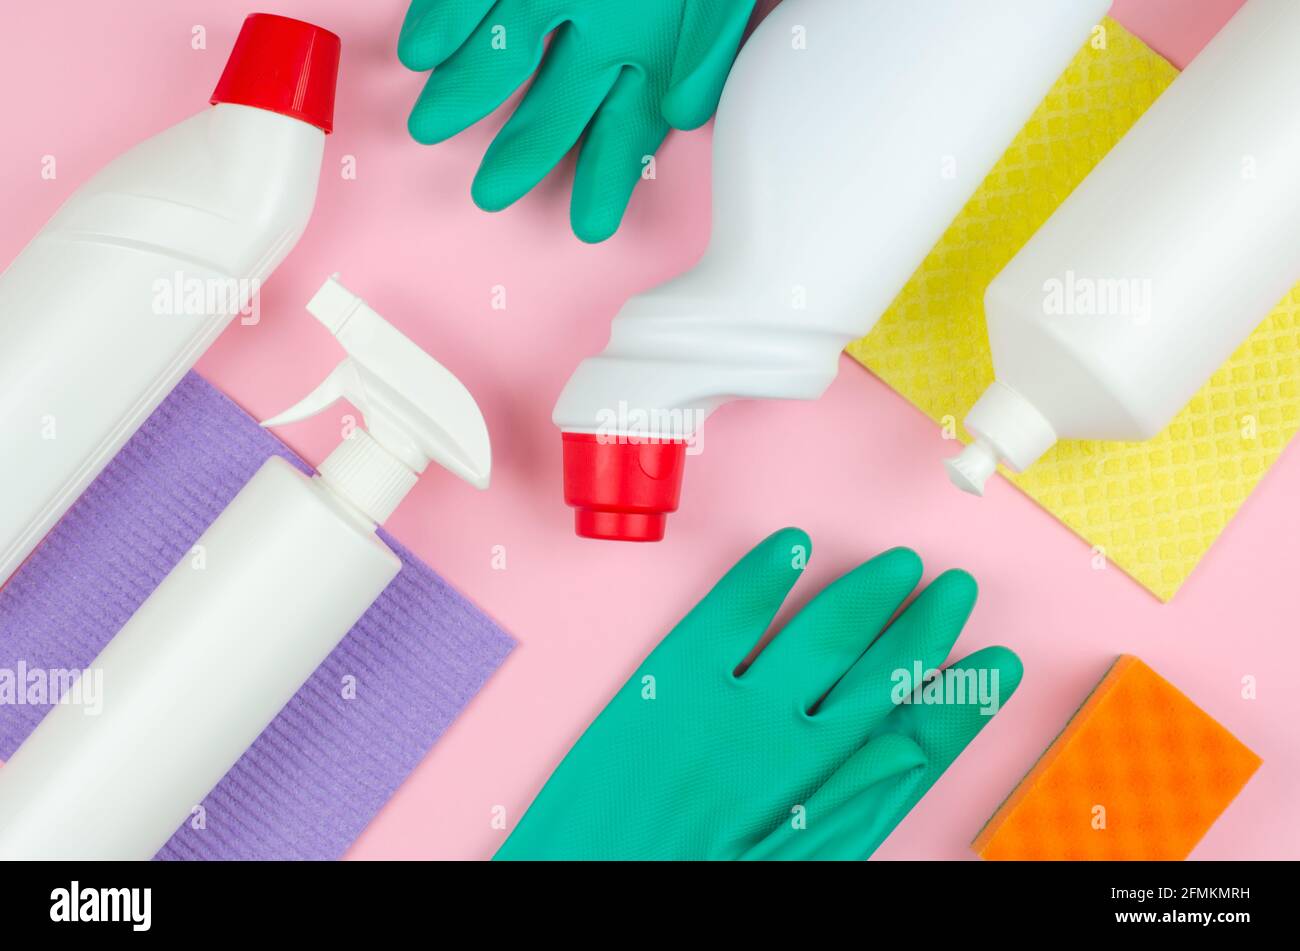 Concetto aziendale di utensili per la pulizia. Bottiglie bianche con detergenti e prodotti per la pulizia e una spugna su fondo rosa. Prodotti per la pulizia Foto Stock